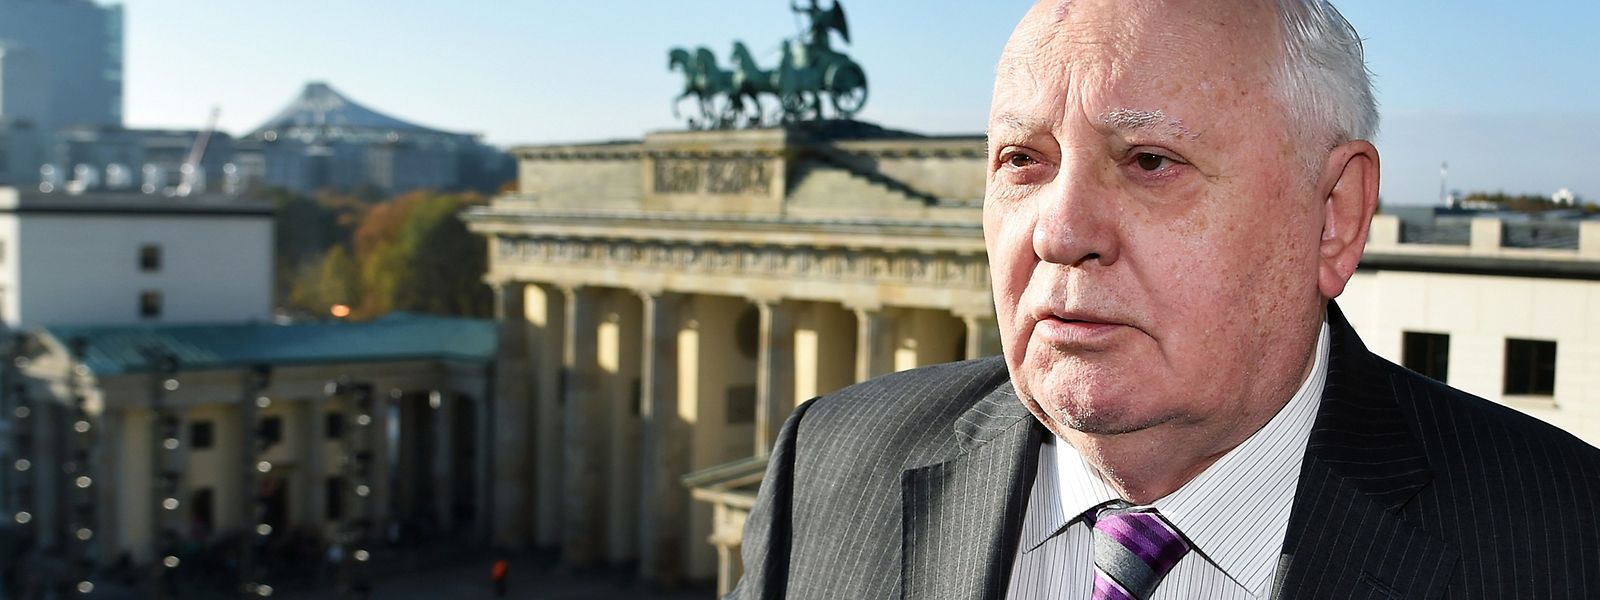 Der frühere sowjetische Staatspräsident Michail Gorbatschow am Pariser Platz in Berlin. Das Bild stammt aus dem Jahr 2014.